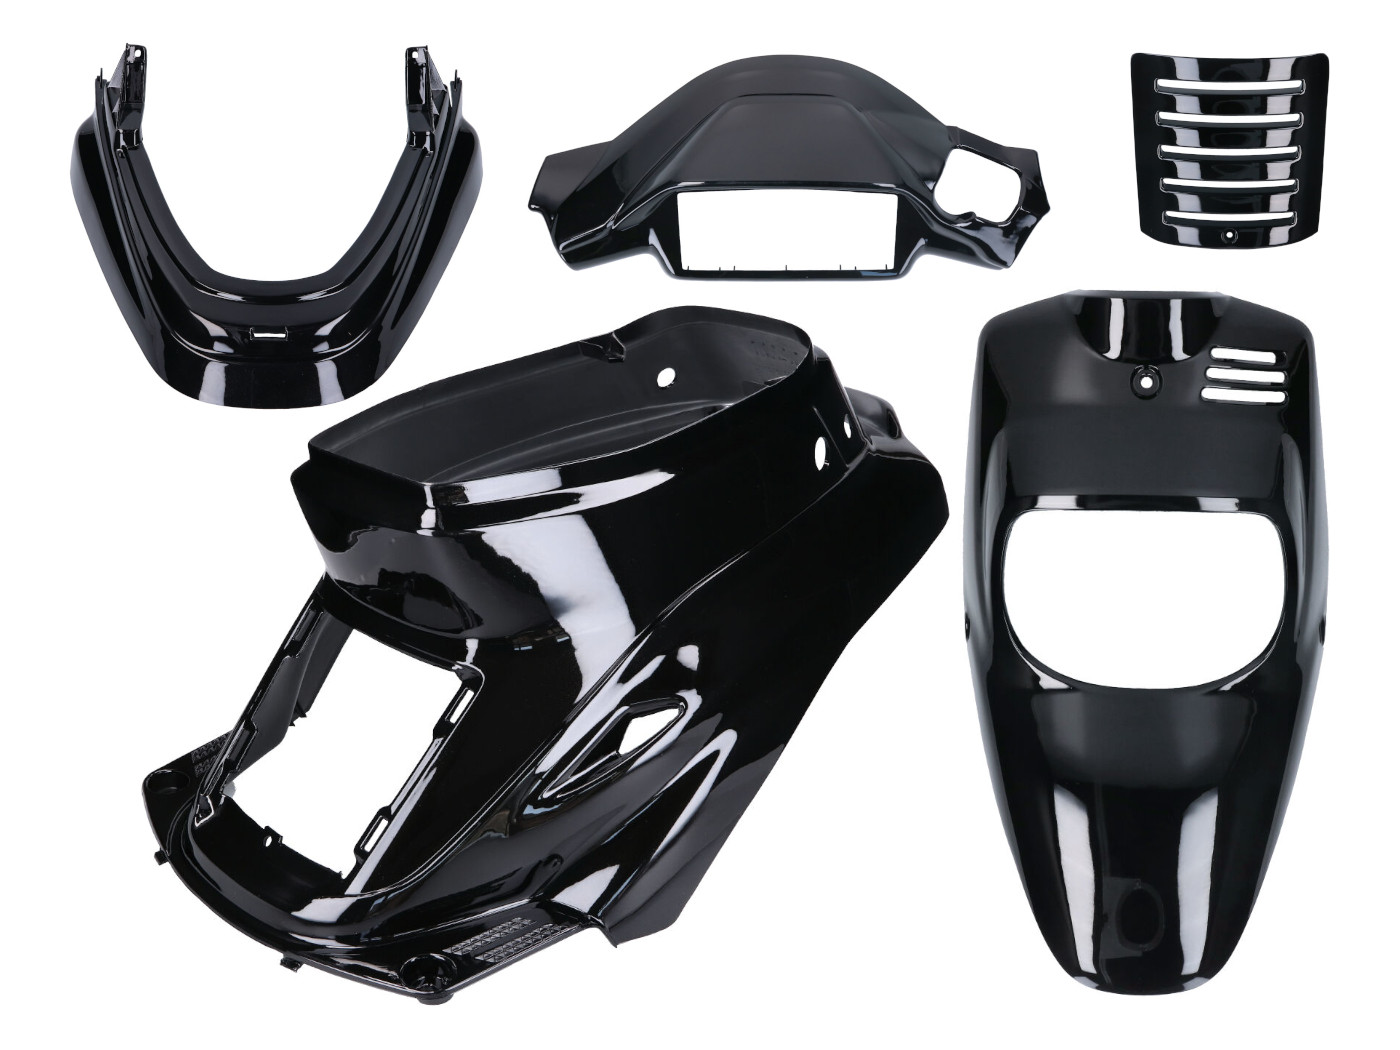 Védőburkolat készlet fekete metál 5 darab MBK Booster -2004, Yamaha BWS -2004, Yamaha BWS -2004, Yamaha BWS -2004